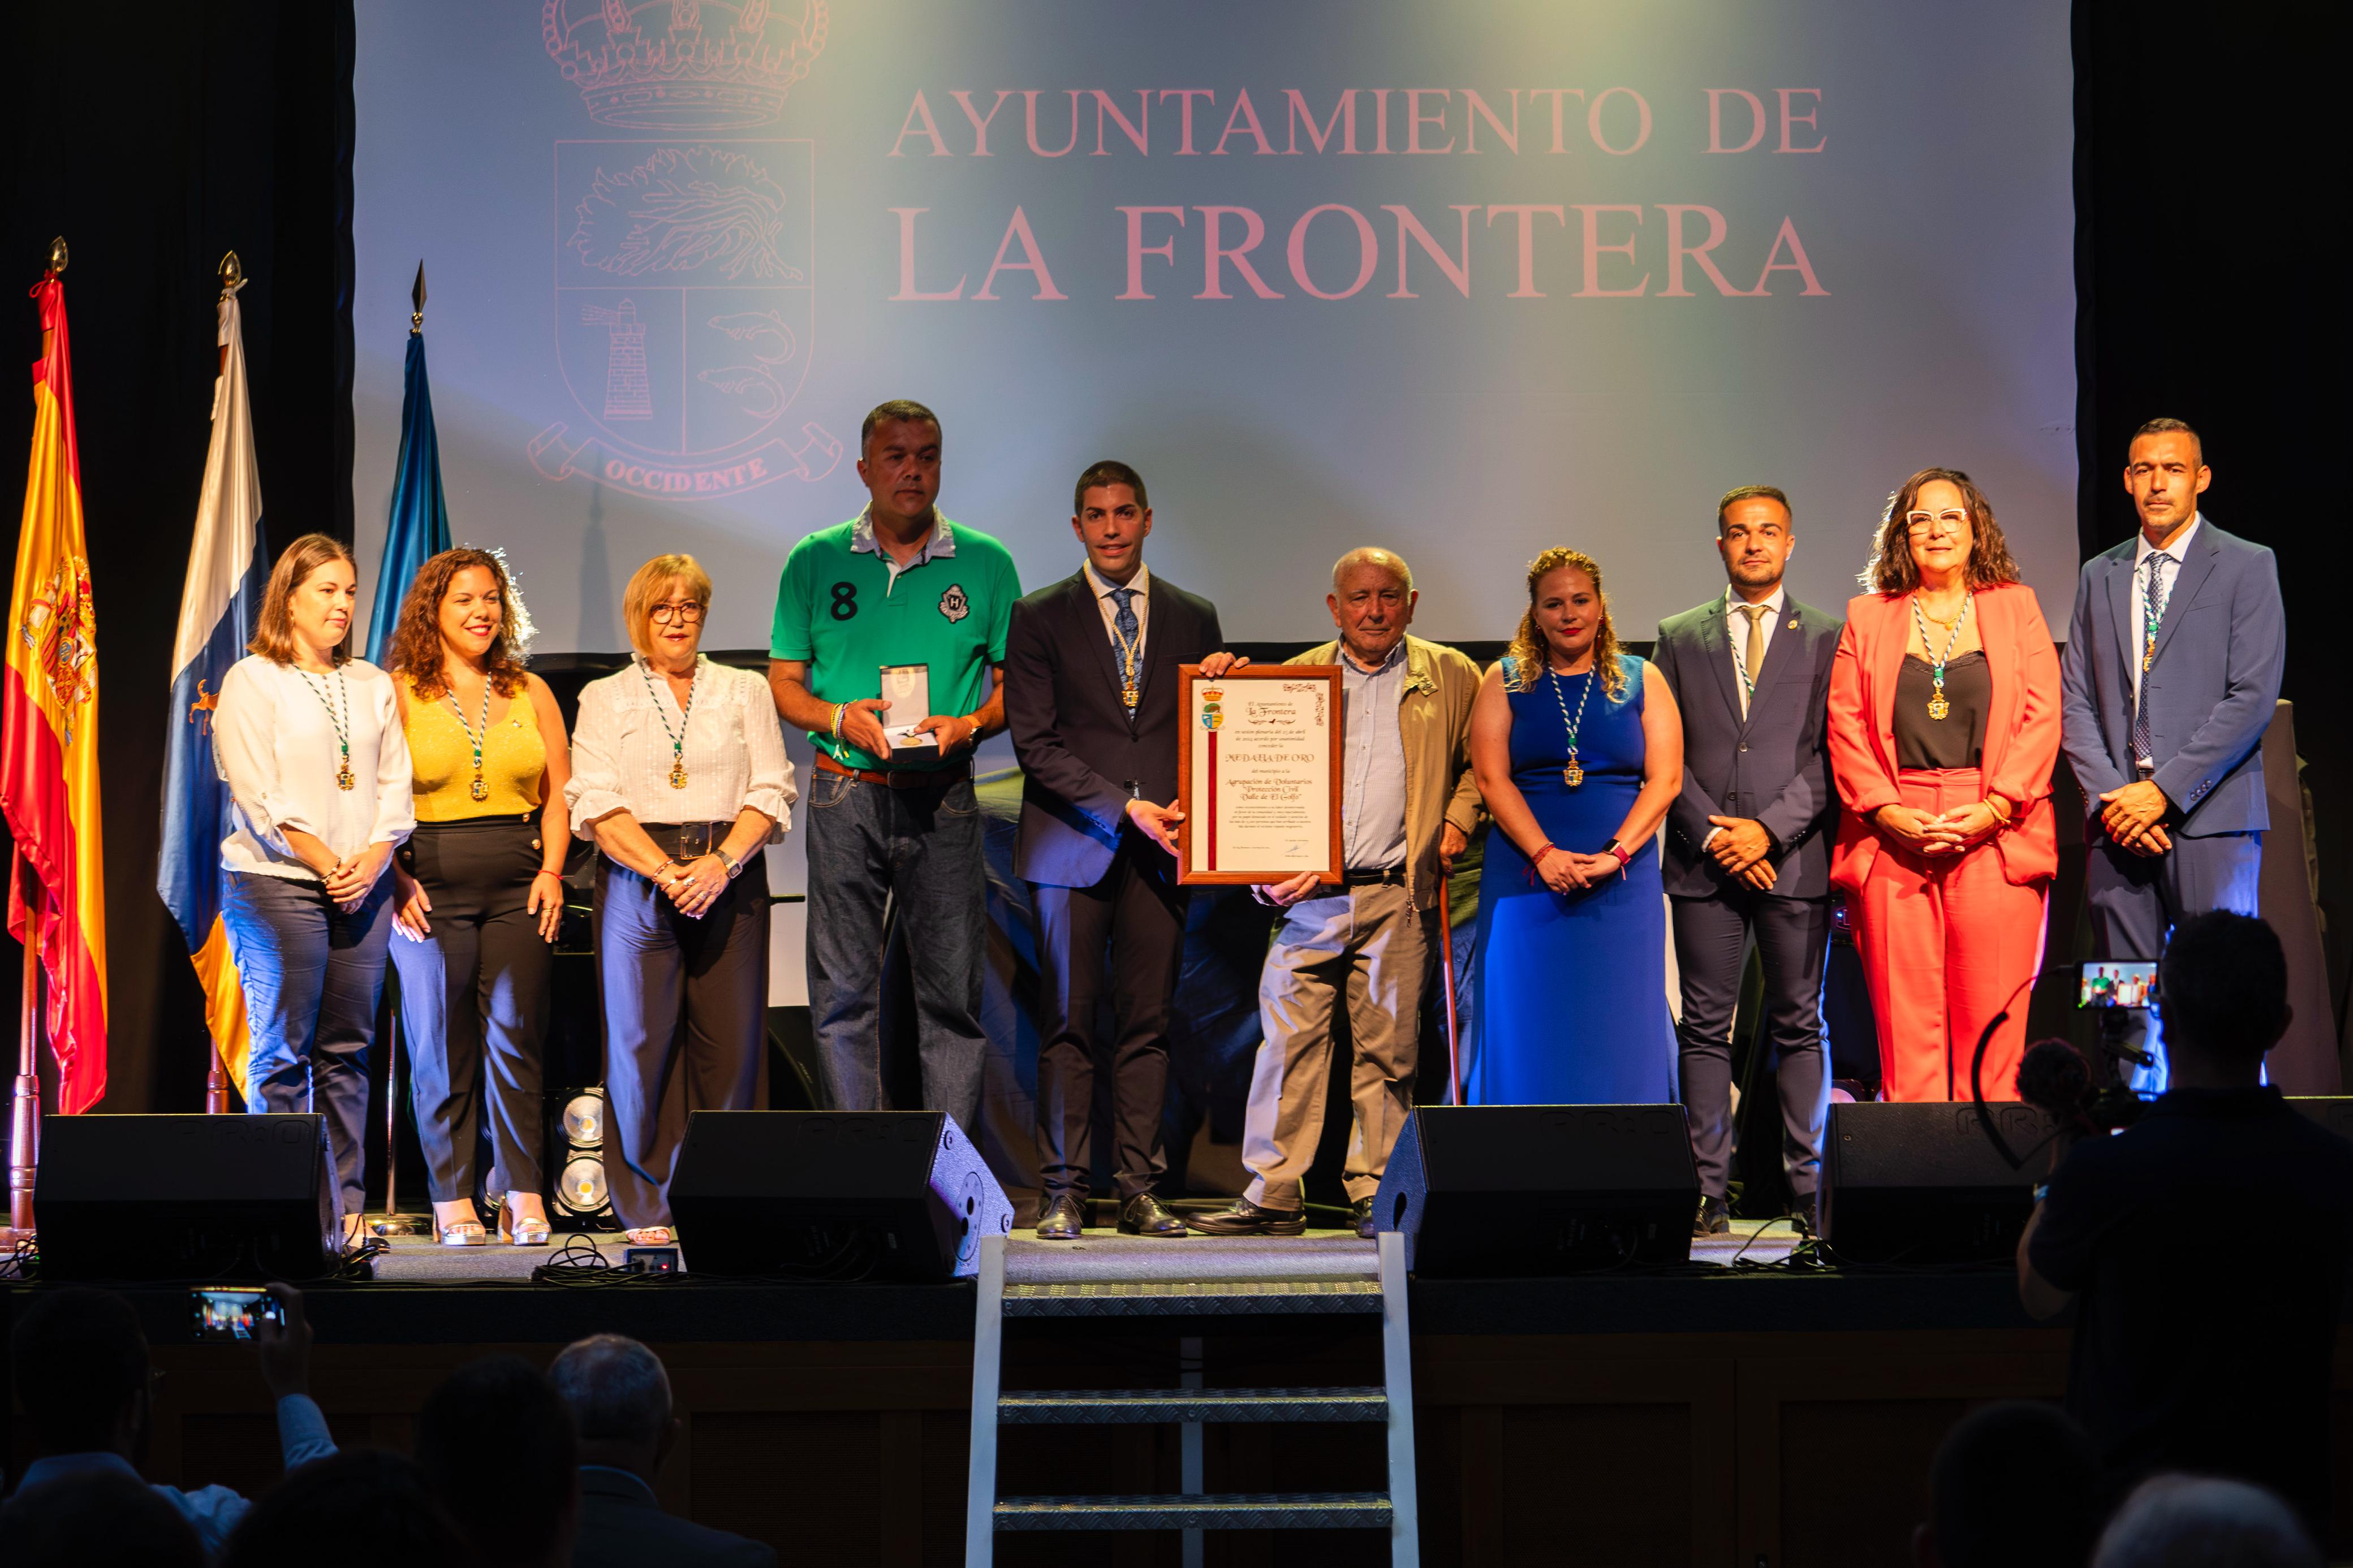 El Ayuntamiento de La Frontera hace entrega de la Medalla de Oro del municipio a la Asociación de Voluntarios de Protección Civil Valle de El Golfo